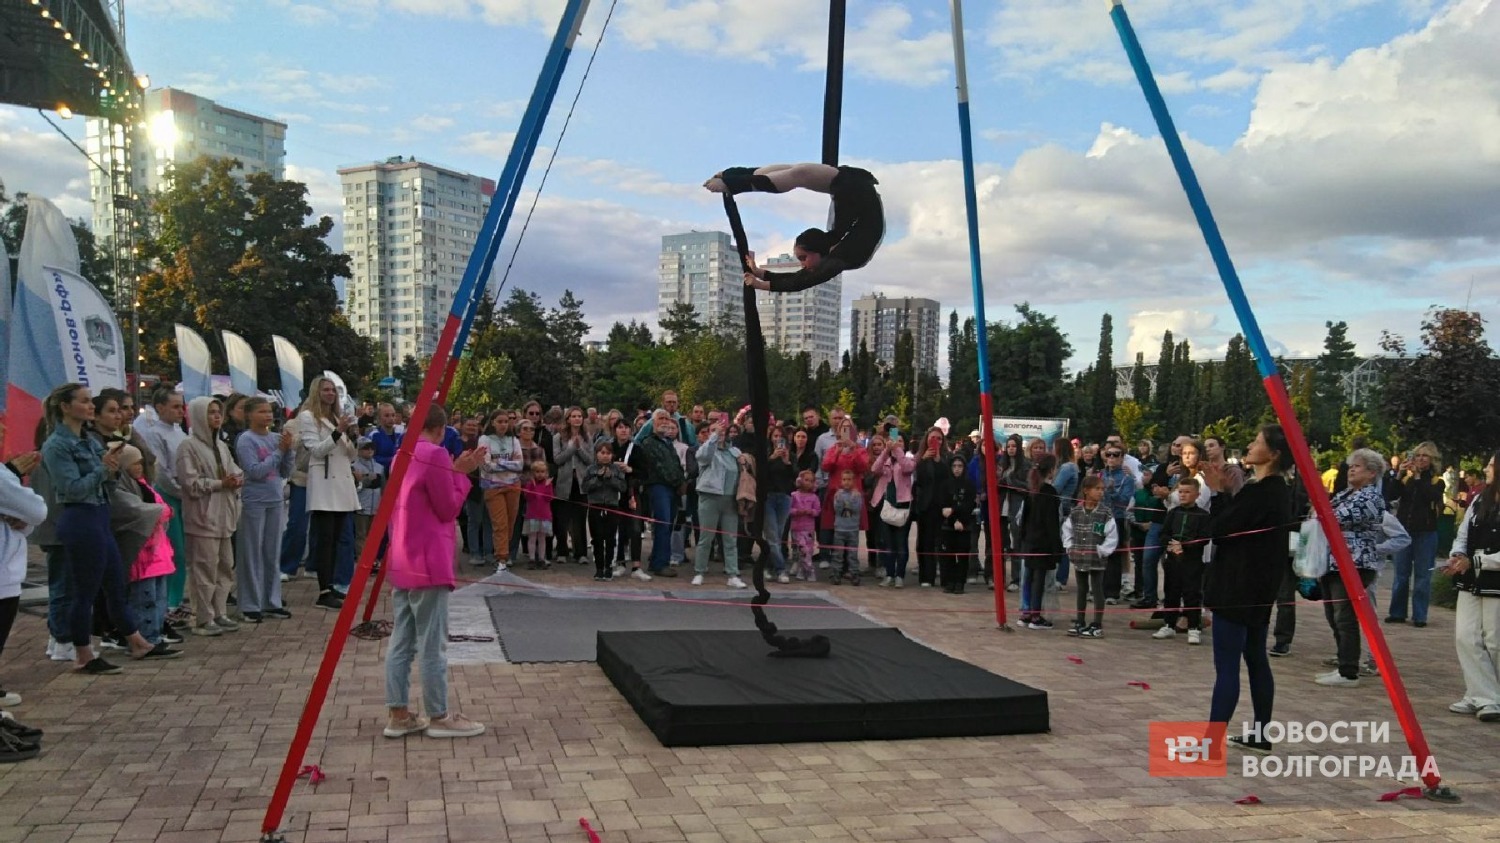 Третьи спортивные игры "Страна Чемпионов" в Волгограде